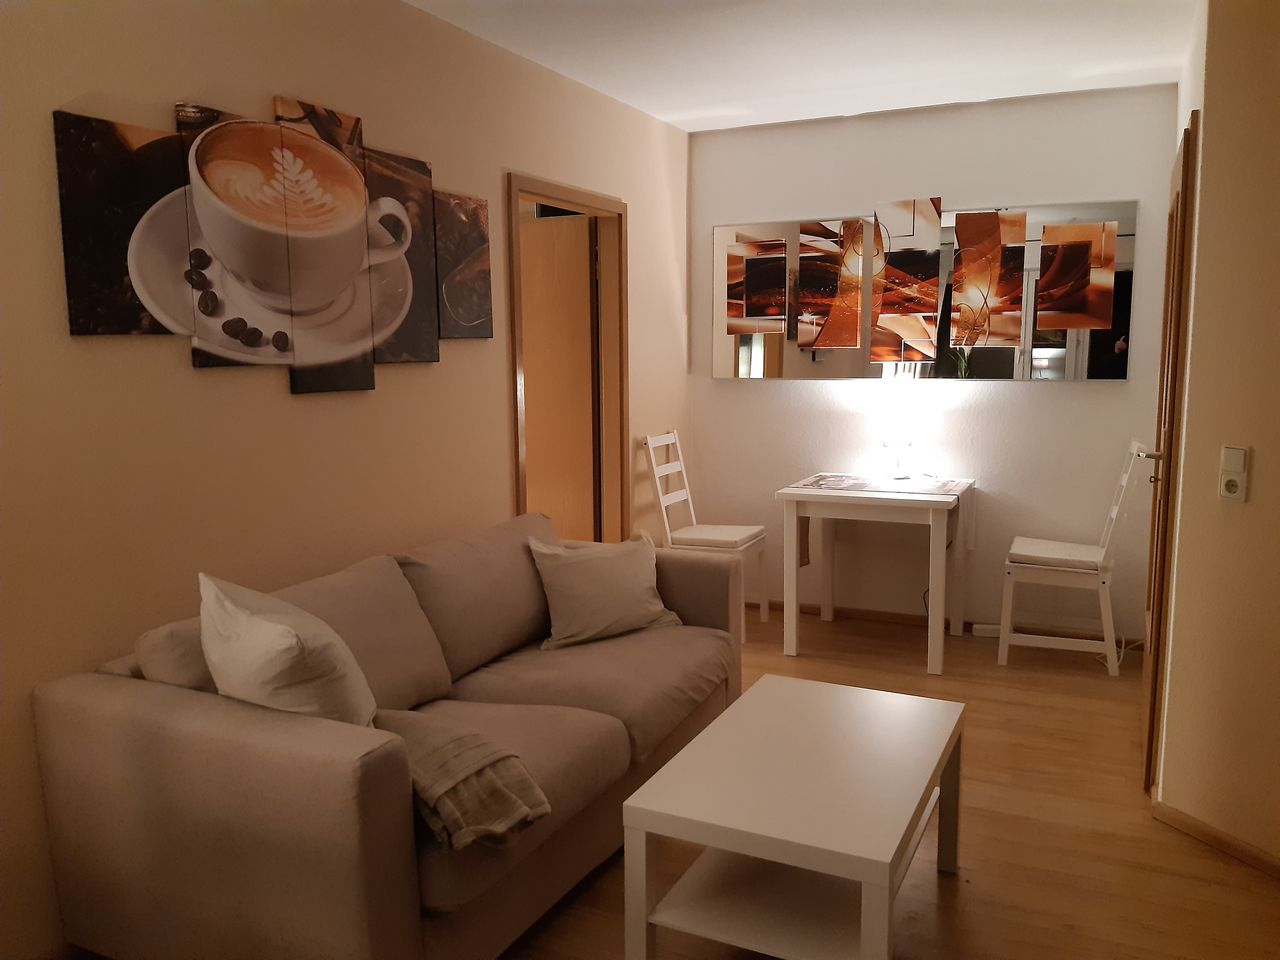 Modern, cute suite located in Leipzig